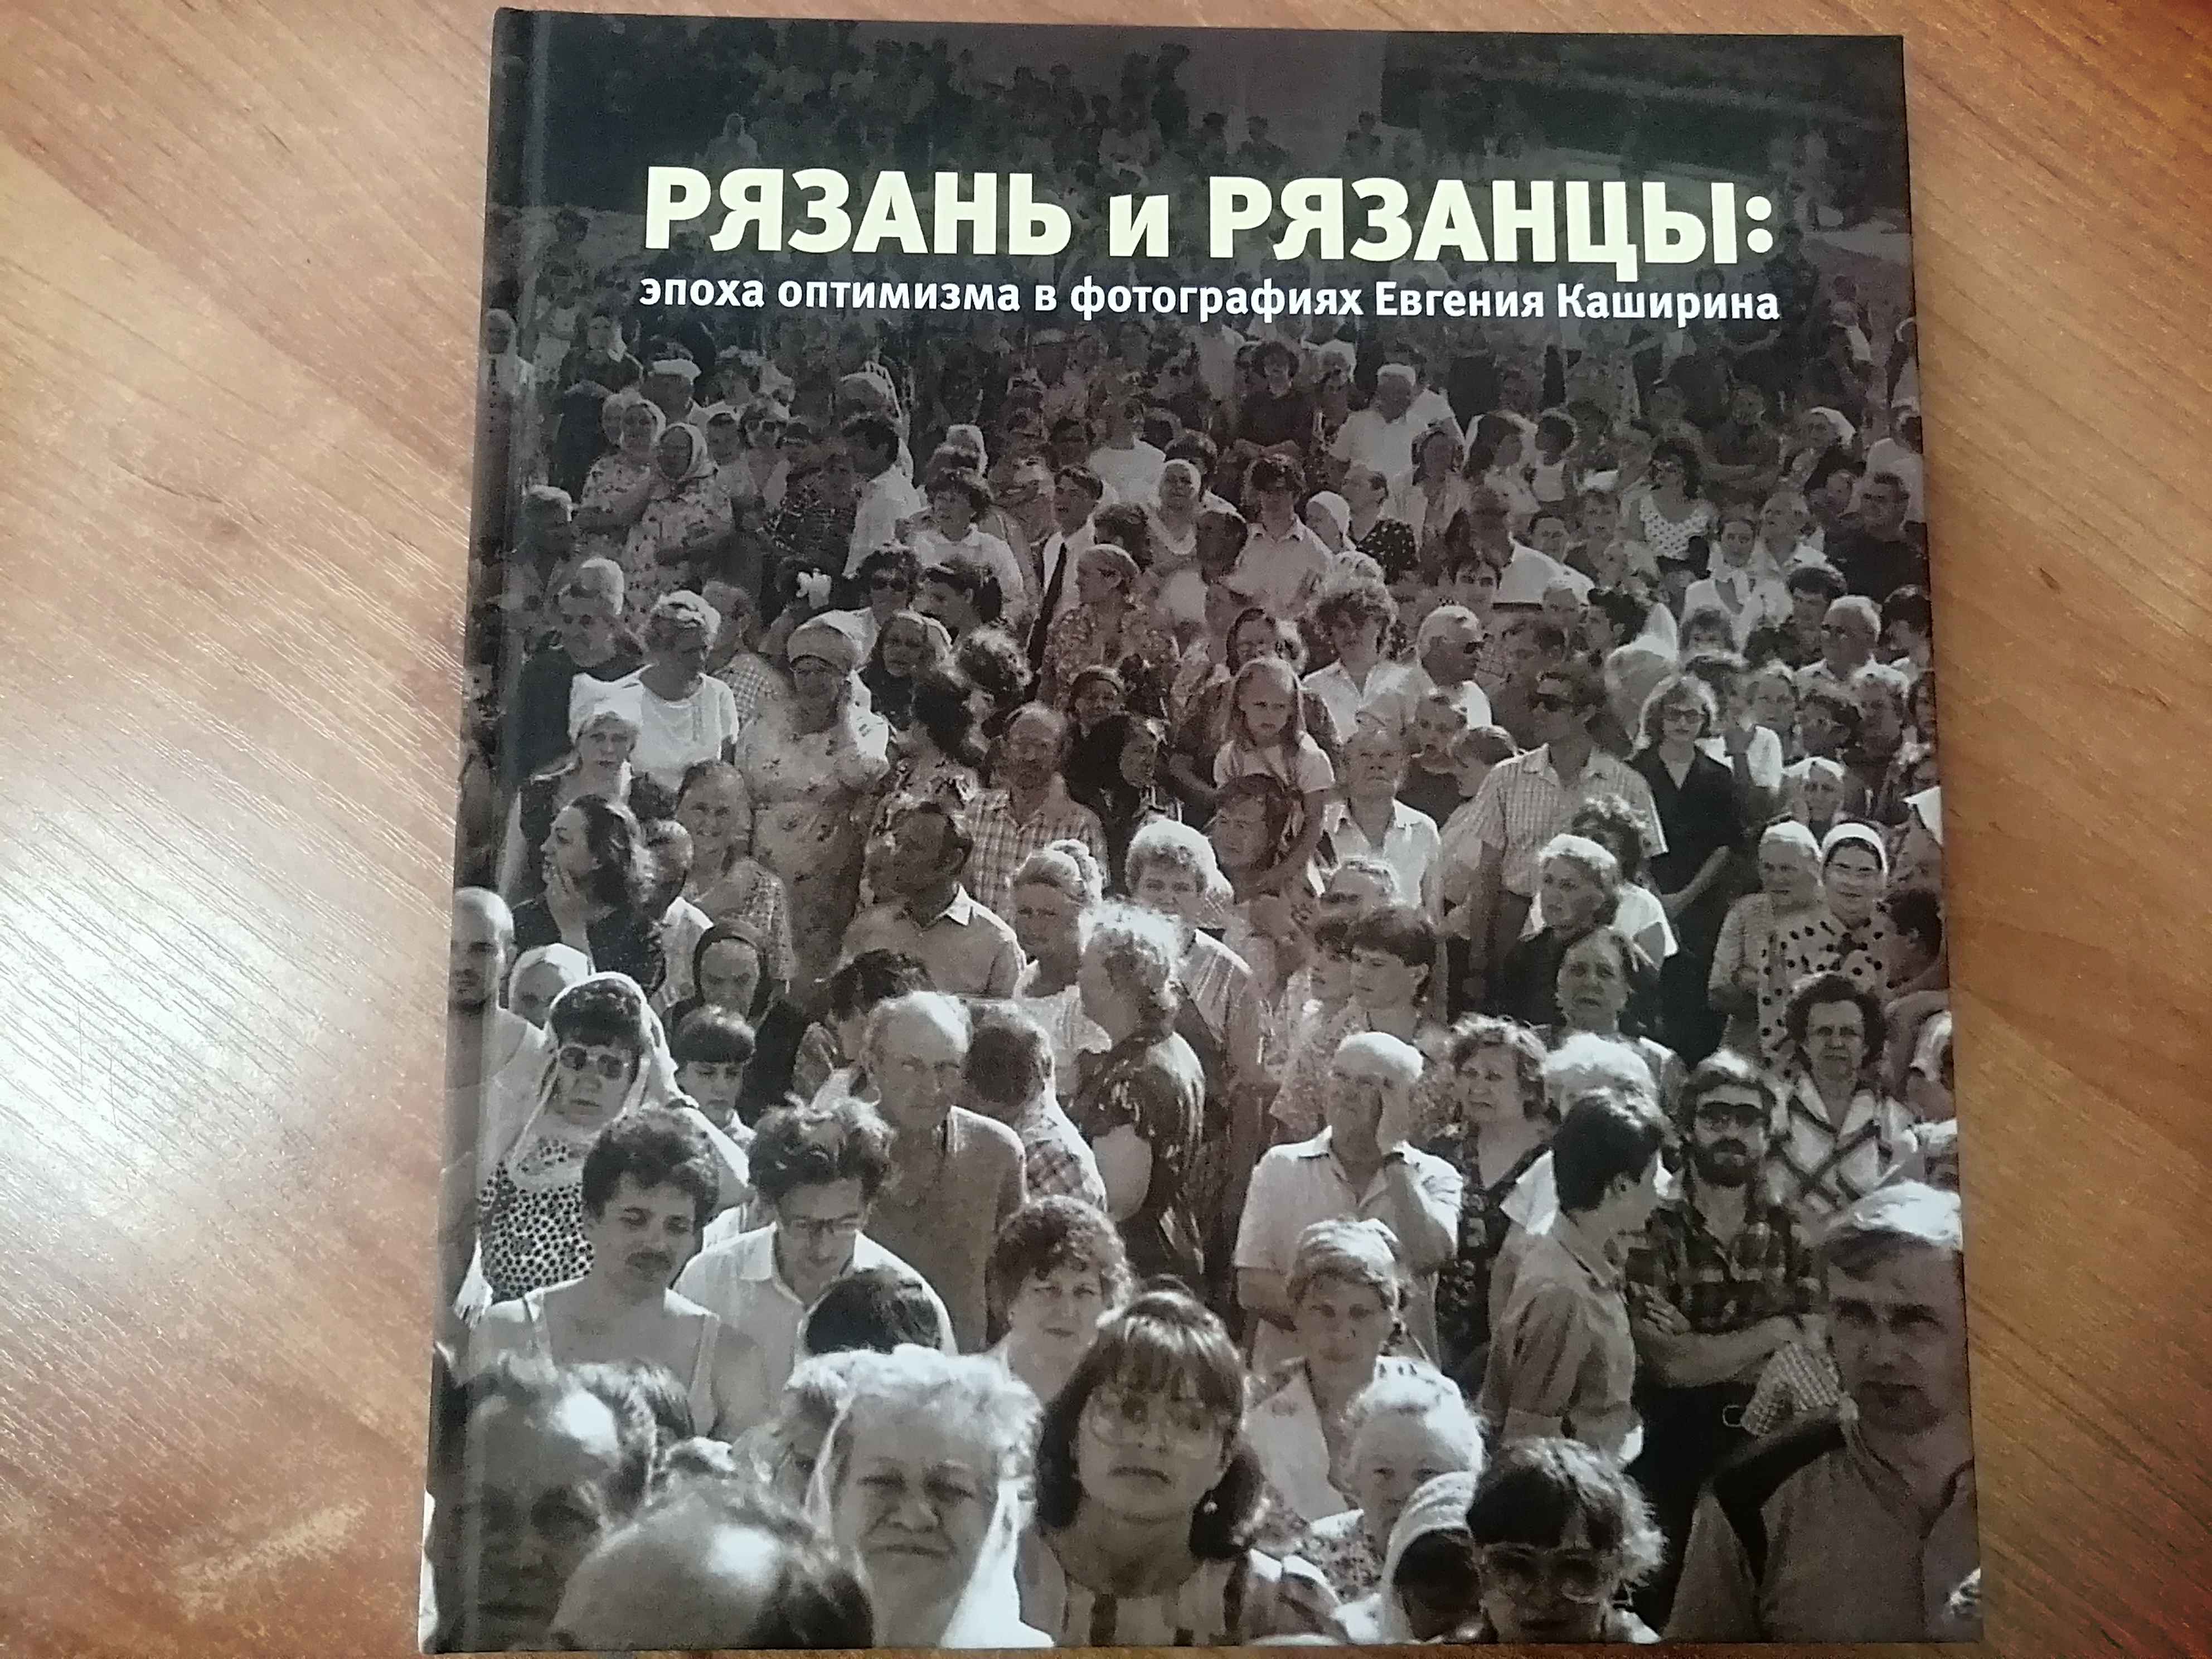 Нашей школе была подарена книга-альбом &amp;quot;Рязань и рязанцы: эпоха оптимизма в фотографиях Евгения Каширина..